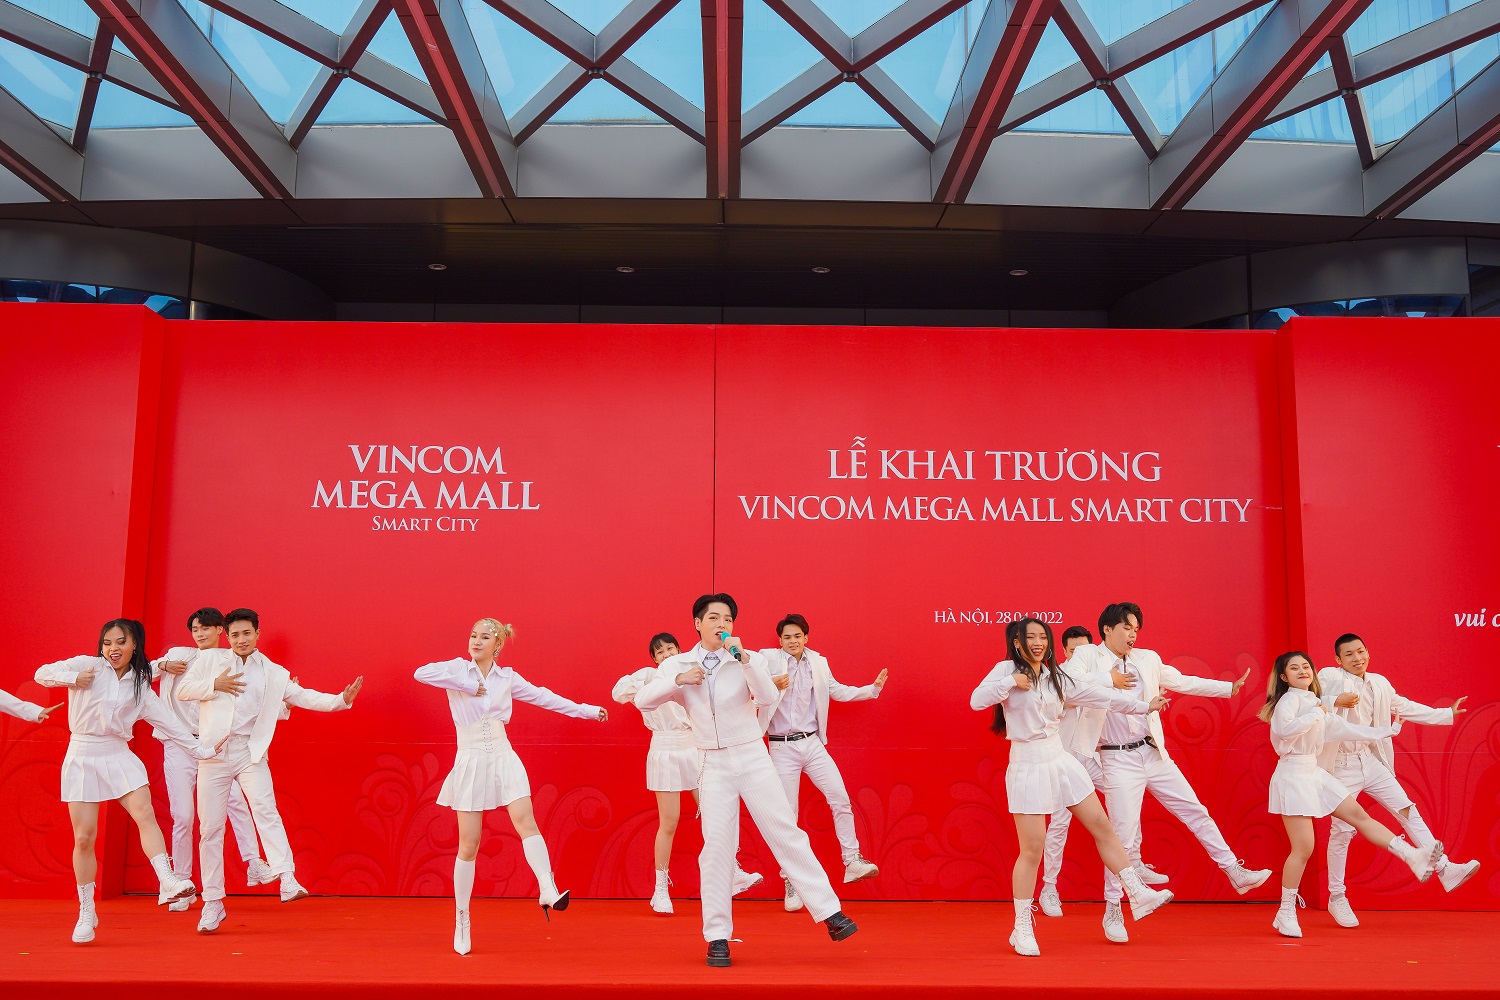 Vincom Mega Mall Smart City - TTTM “Life-Design Mall” đầu tiên tại Việt Nam đã chính thức khai trương, mở cửa đón khách từ sáng 28/4